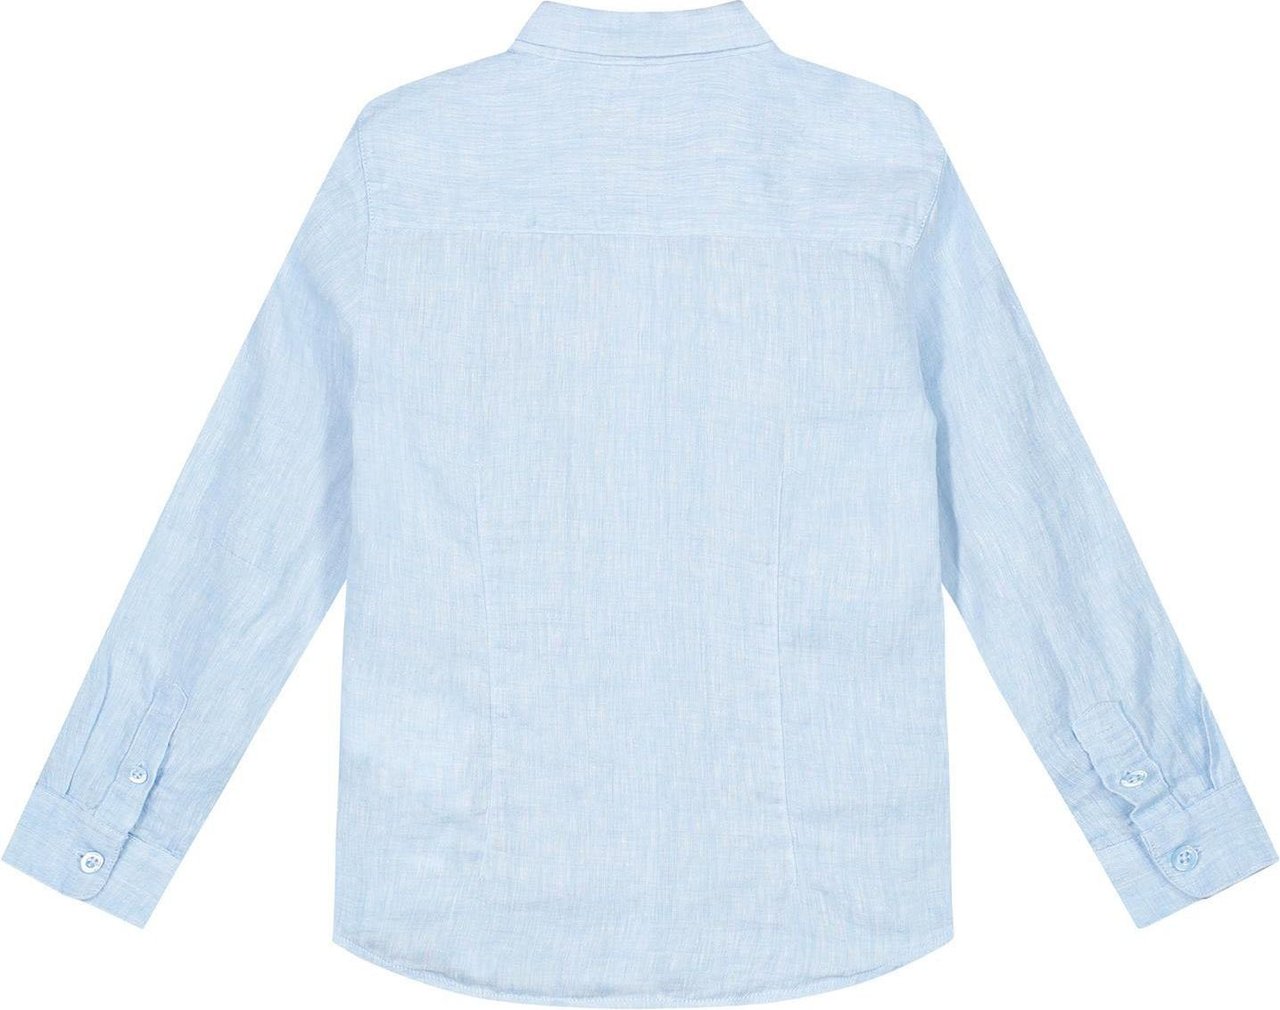 Emporio Armani Shirt Blauw